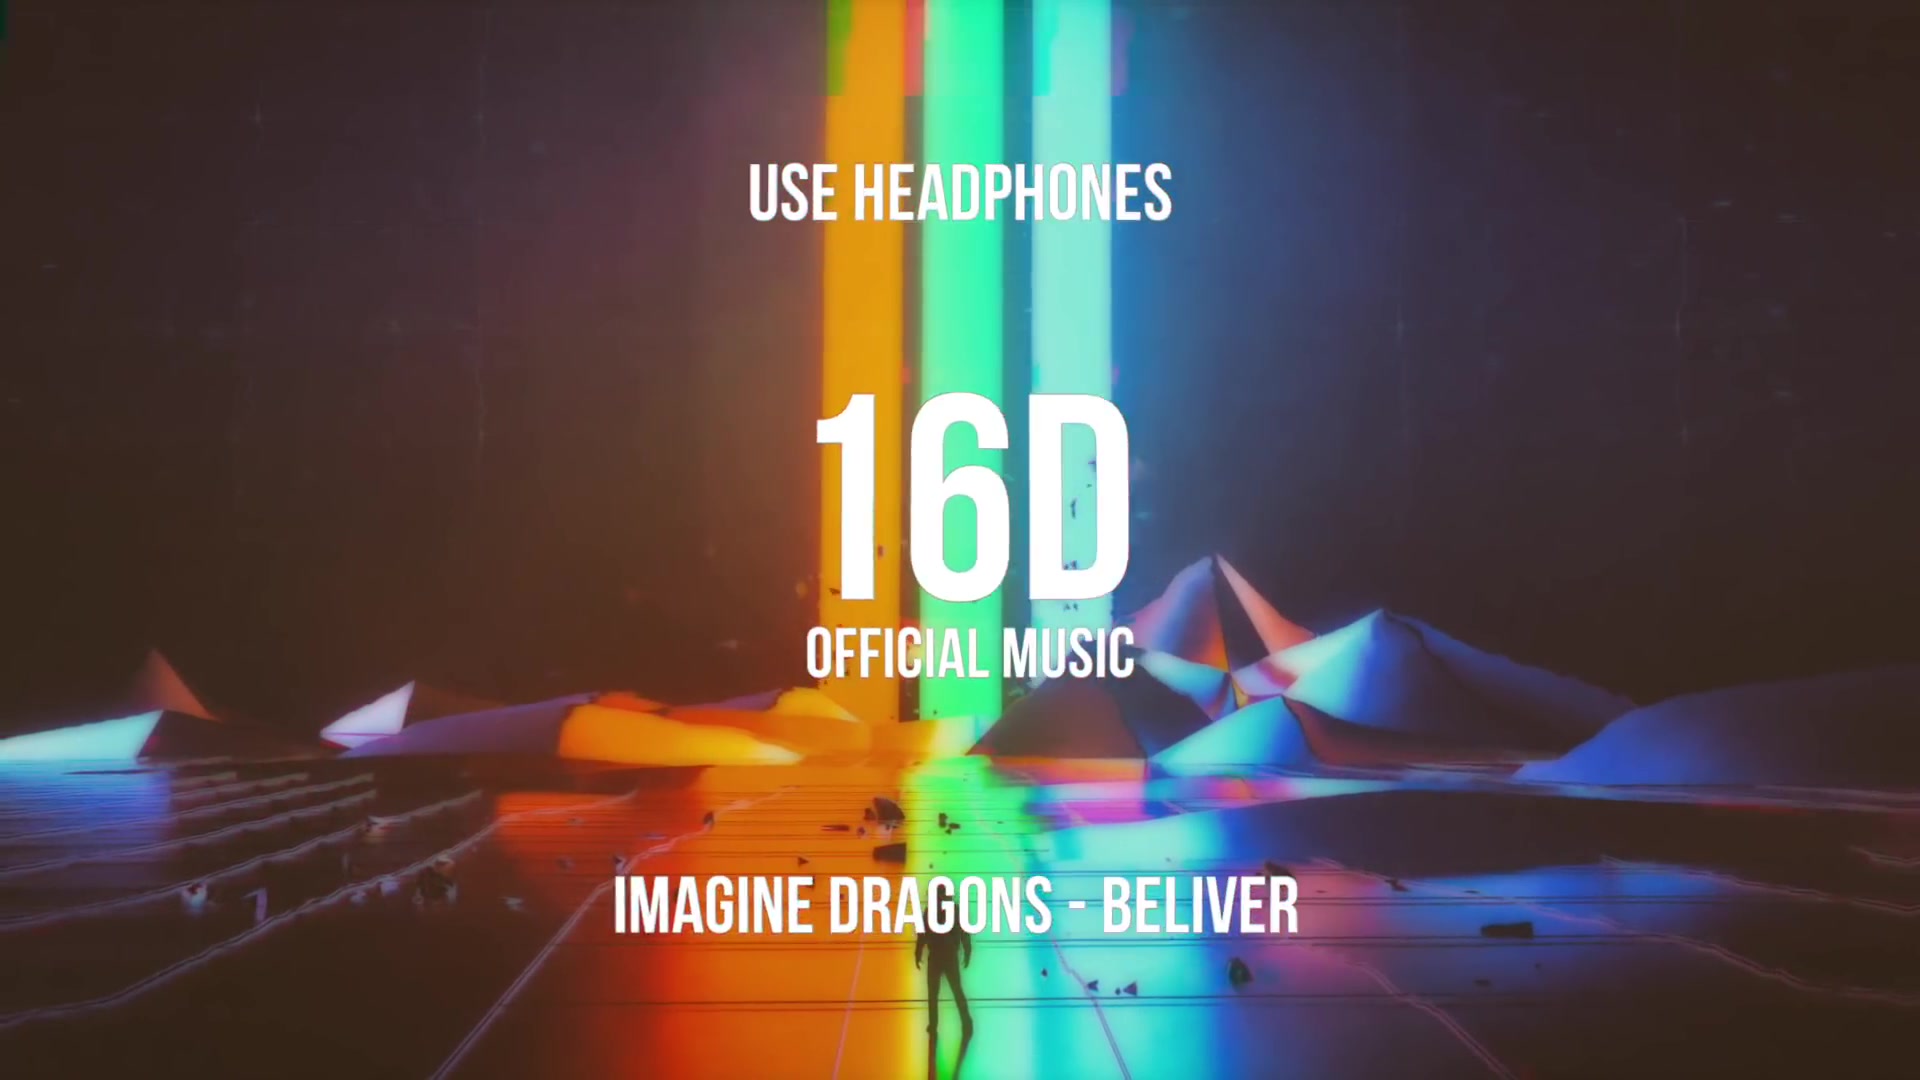 戴上耳机！16D版Believer-Imagine Dragons